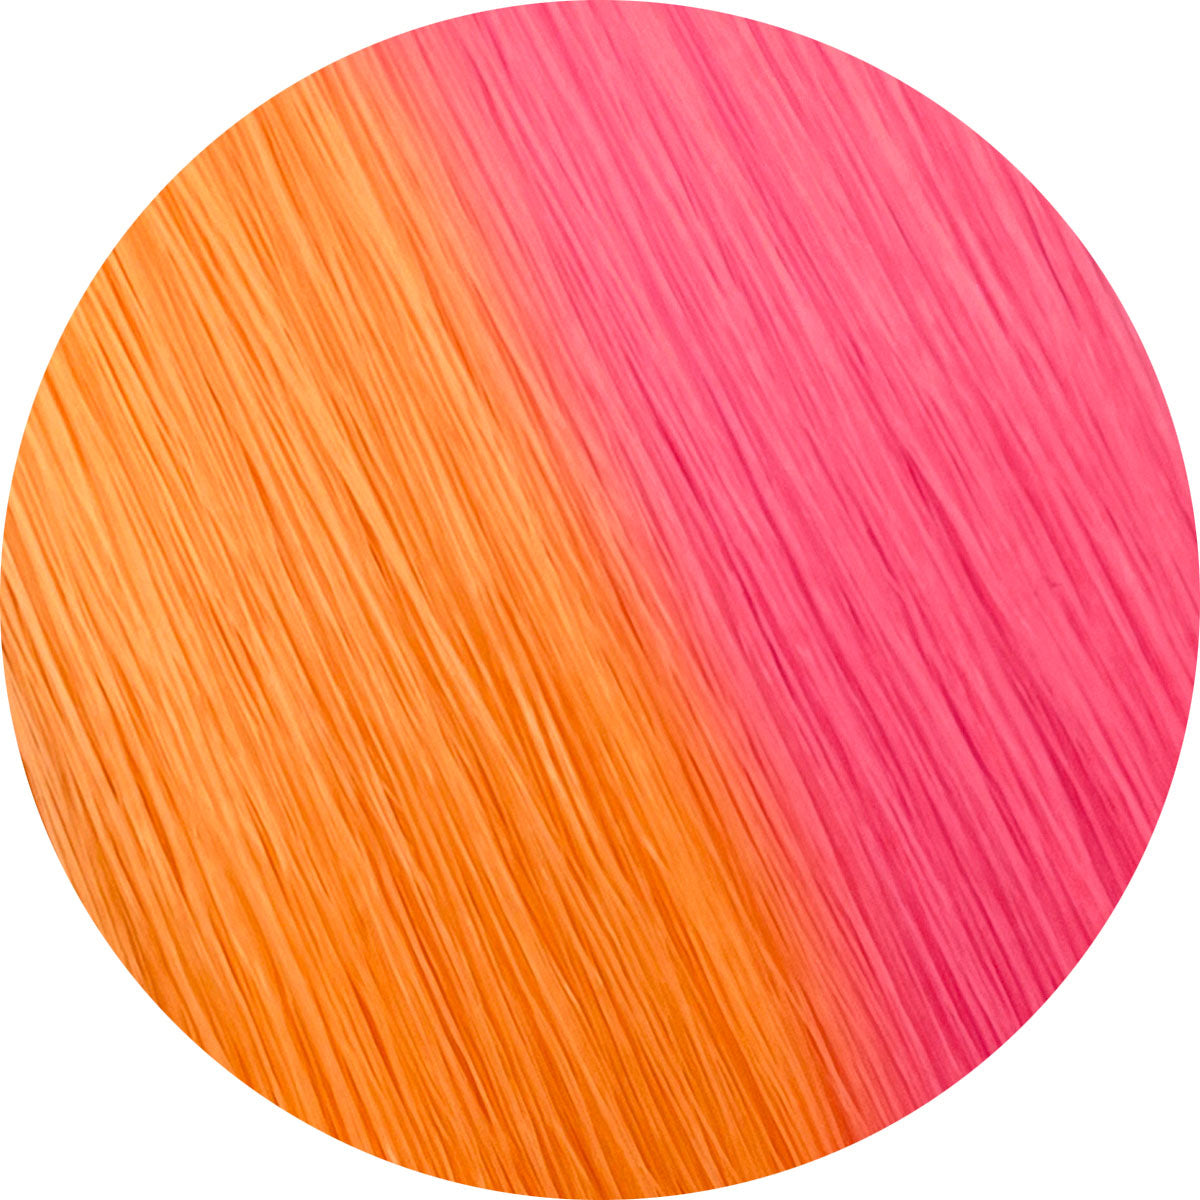 light orange pink hair